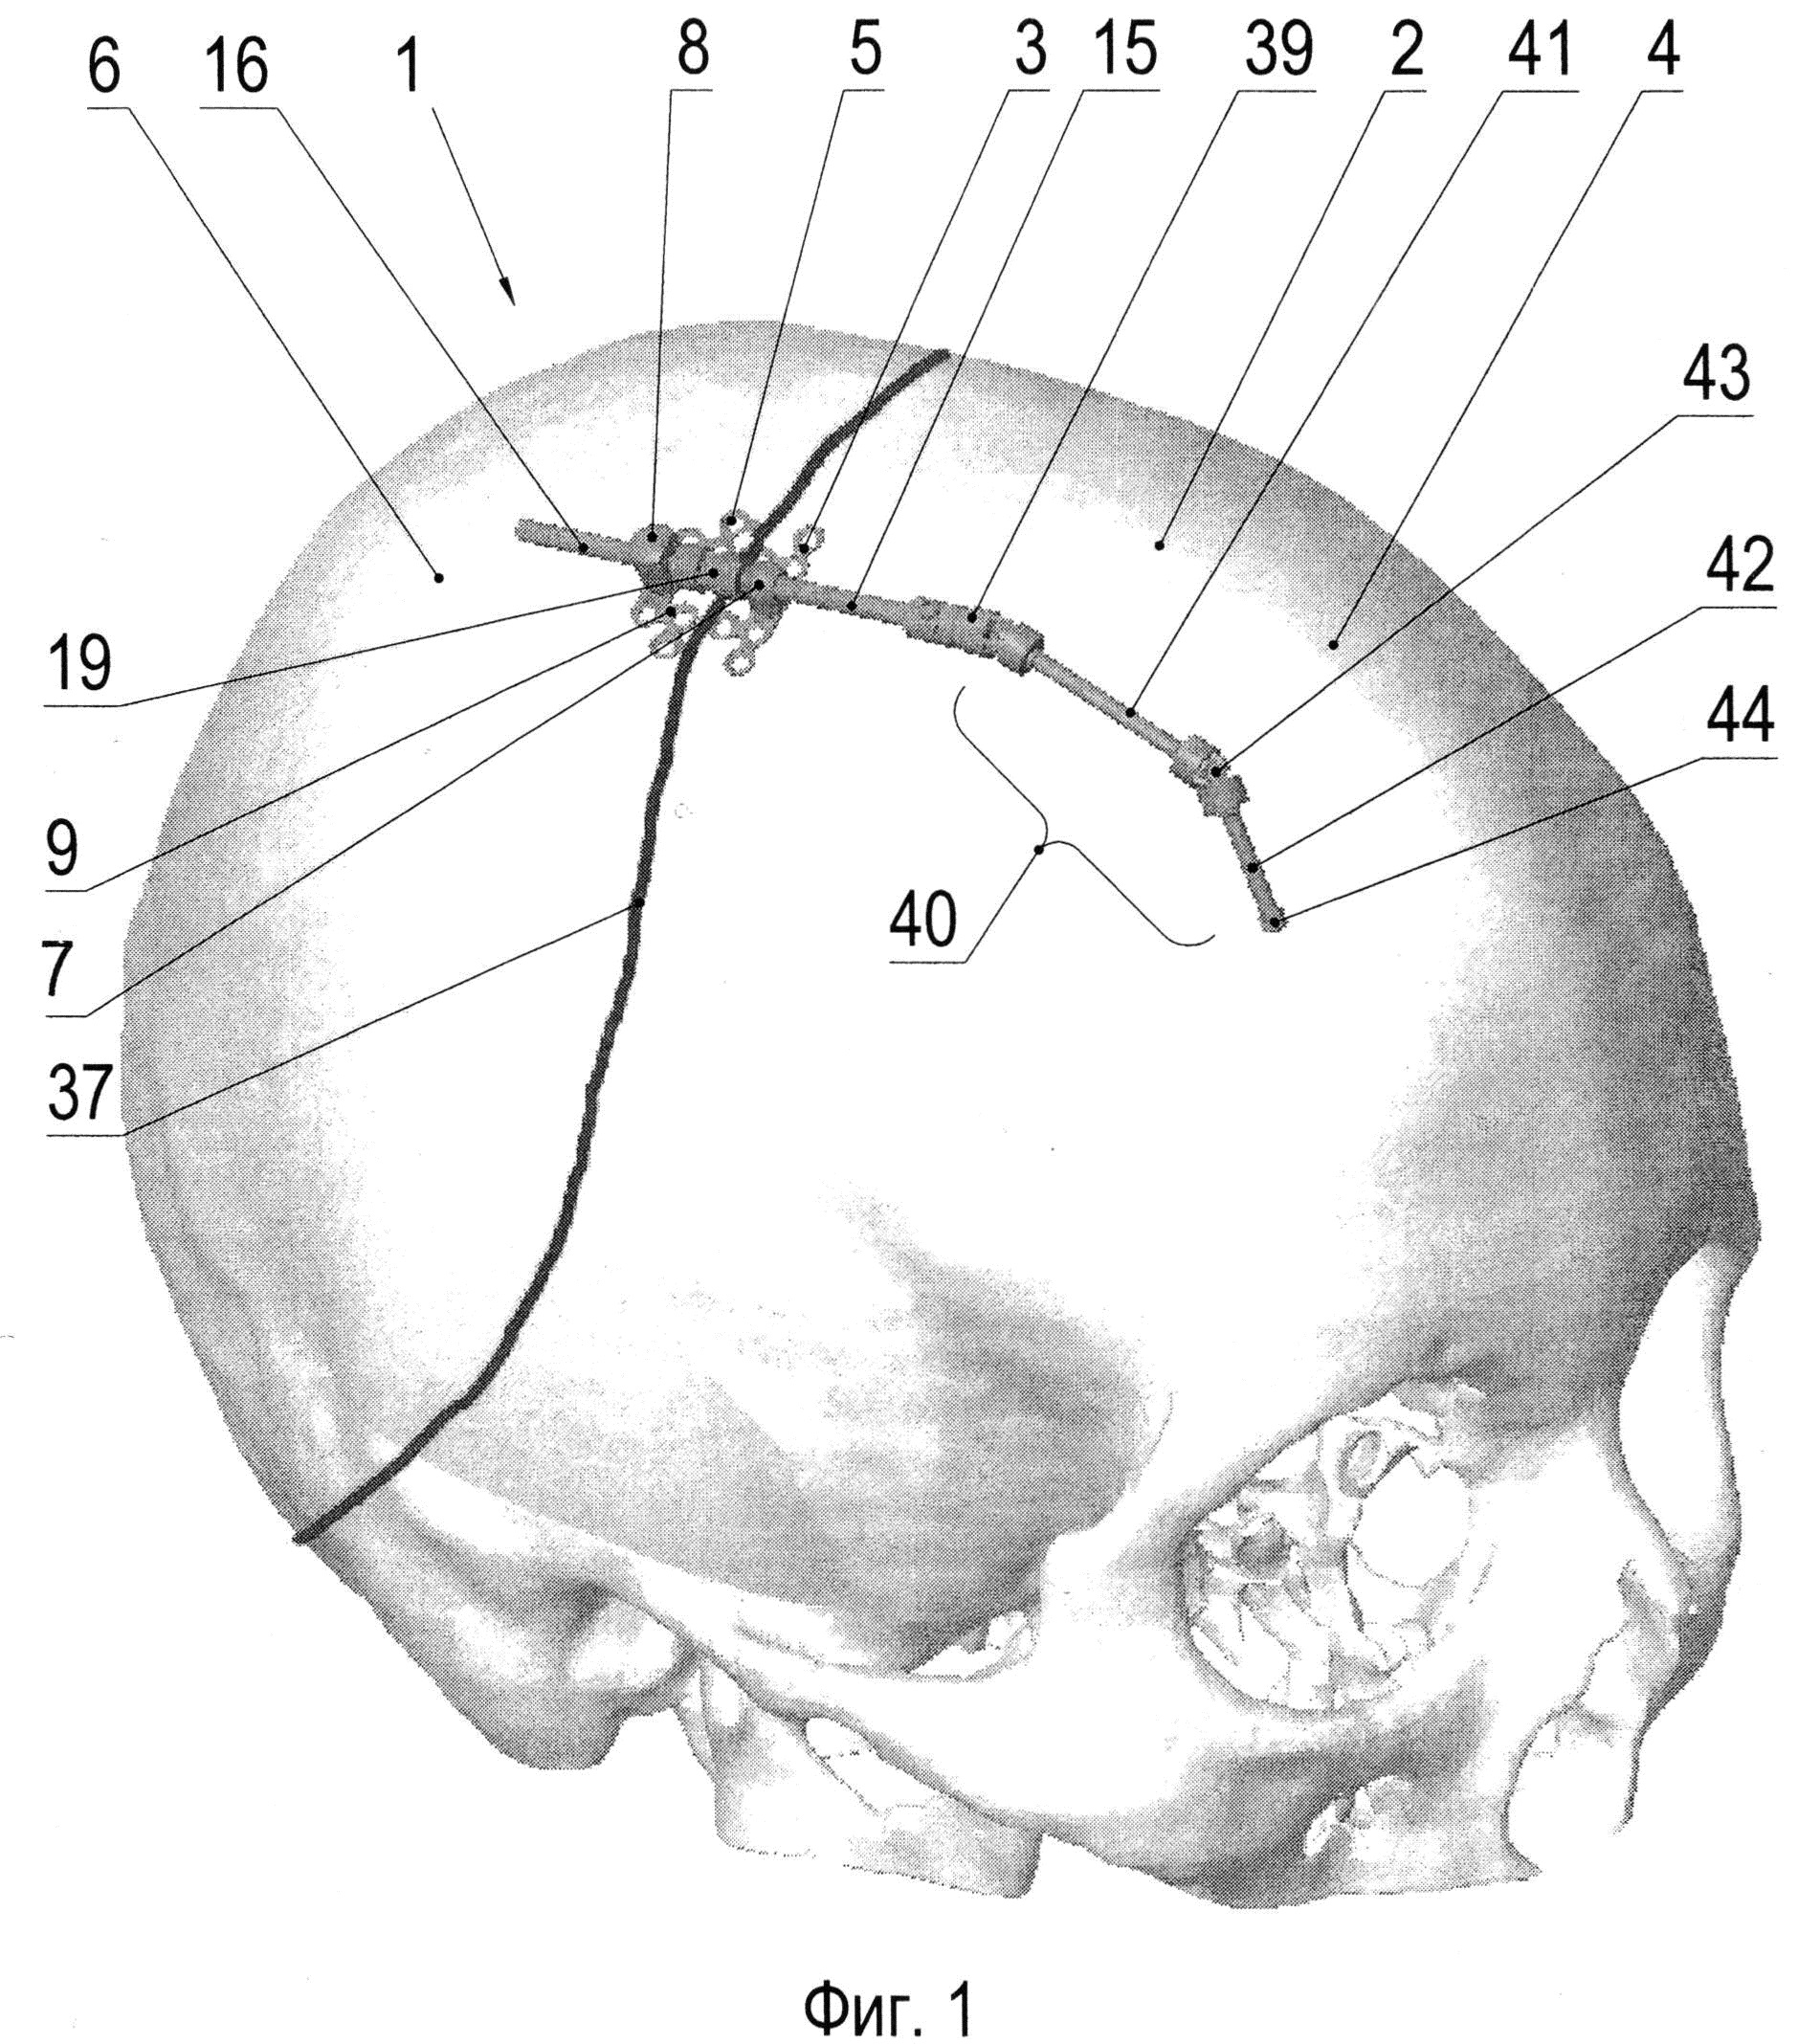 Компрессионно-дистракционный аппарат для устранения деформации черепа, преимущественно явившейся результатом преждевременного заращения черепных швов